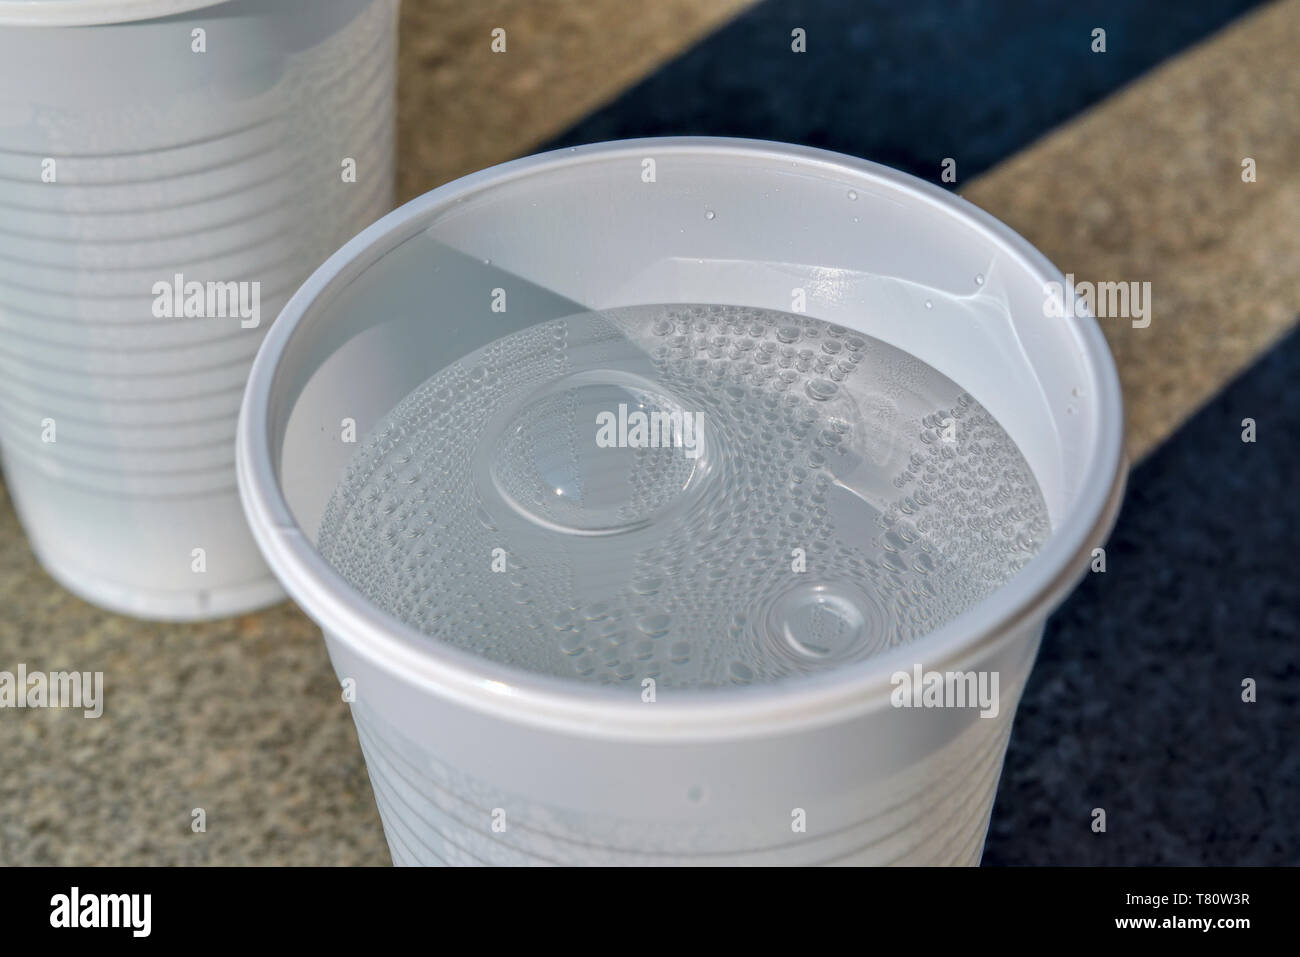 Tasse en plastique blanc avec de l'eau minérale gazeuse froide contre un comptoir en pierre. Banque D'Images